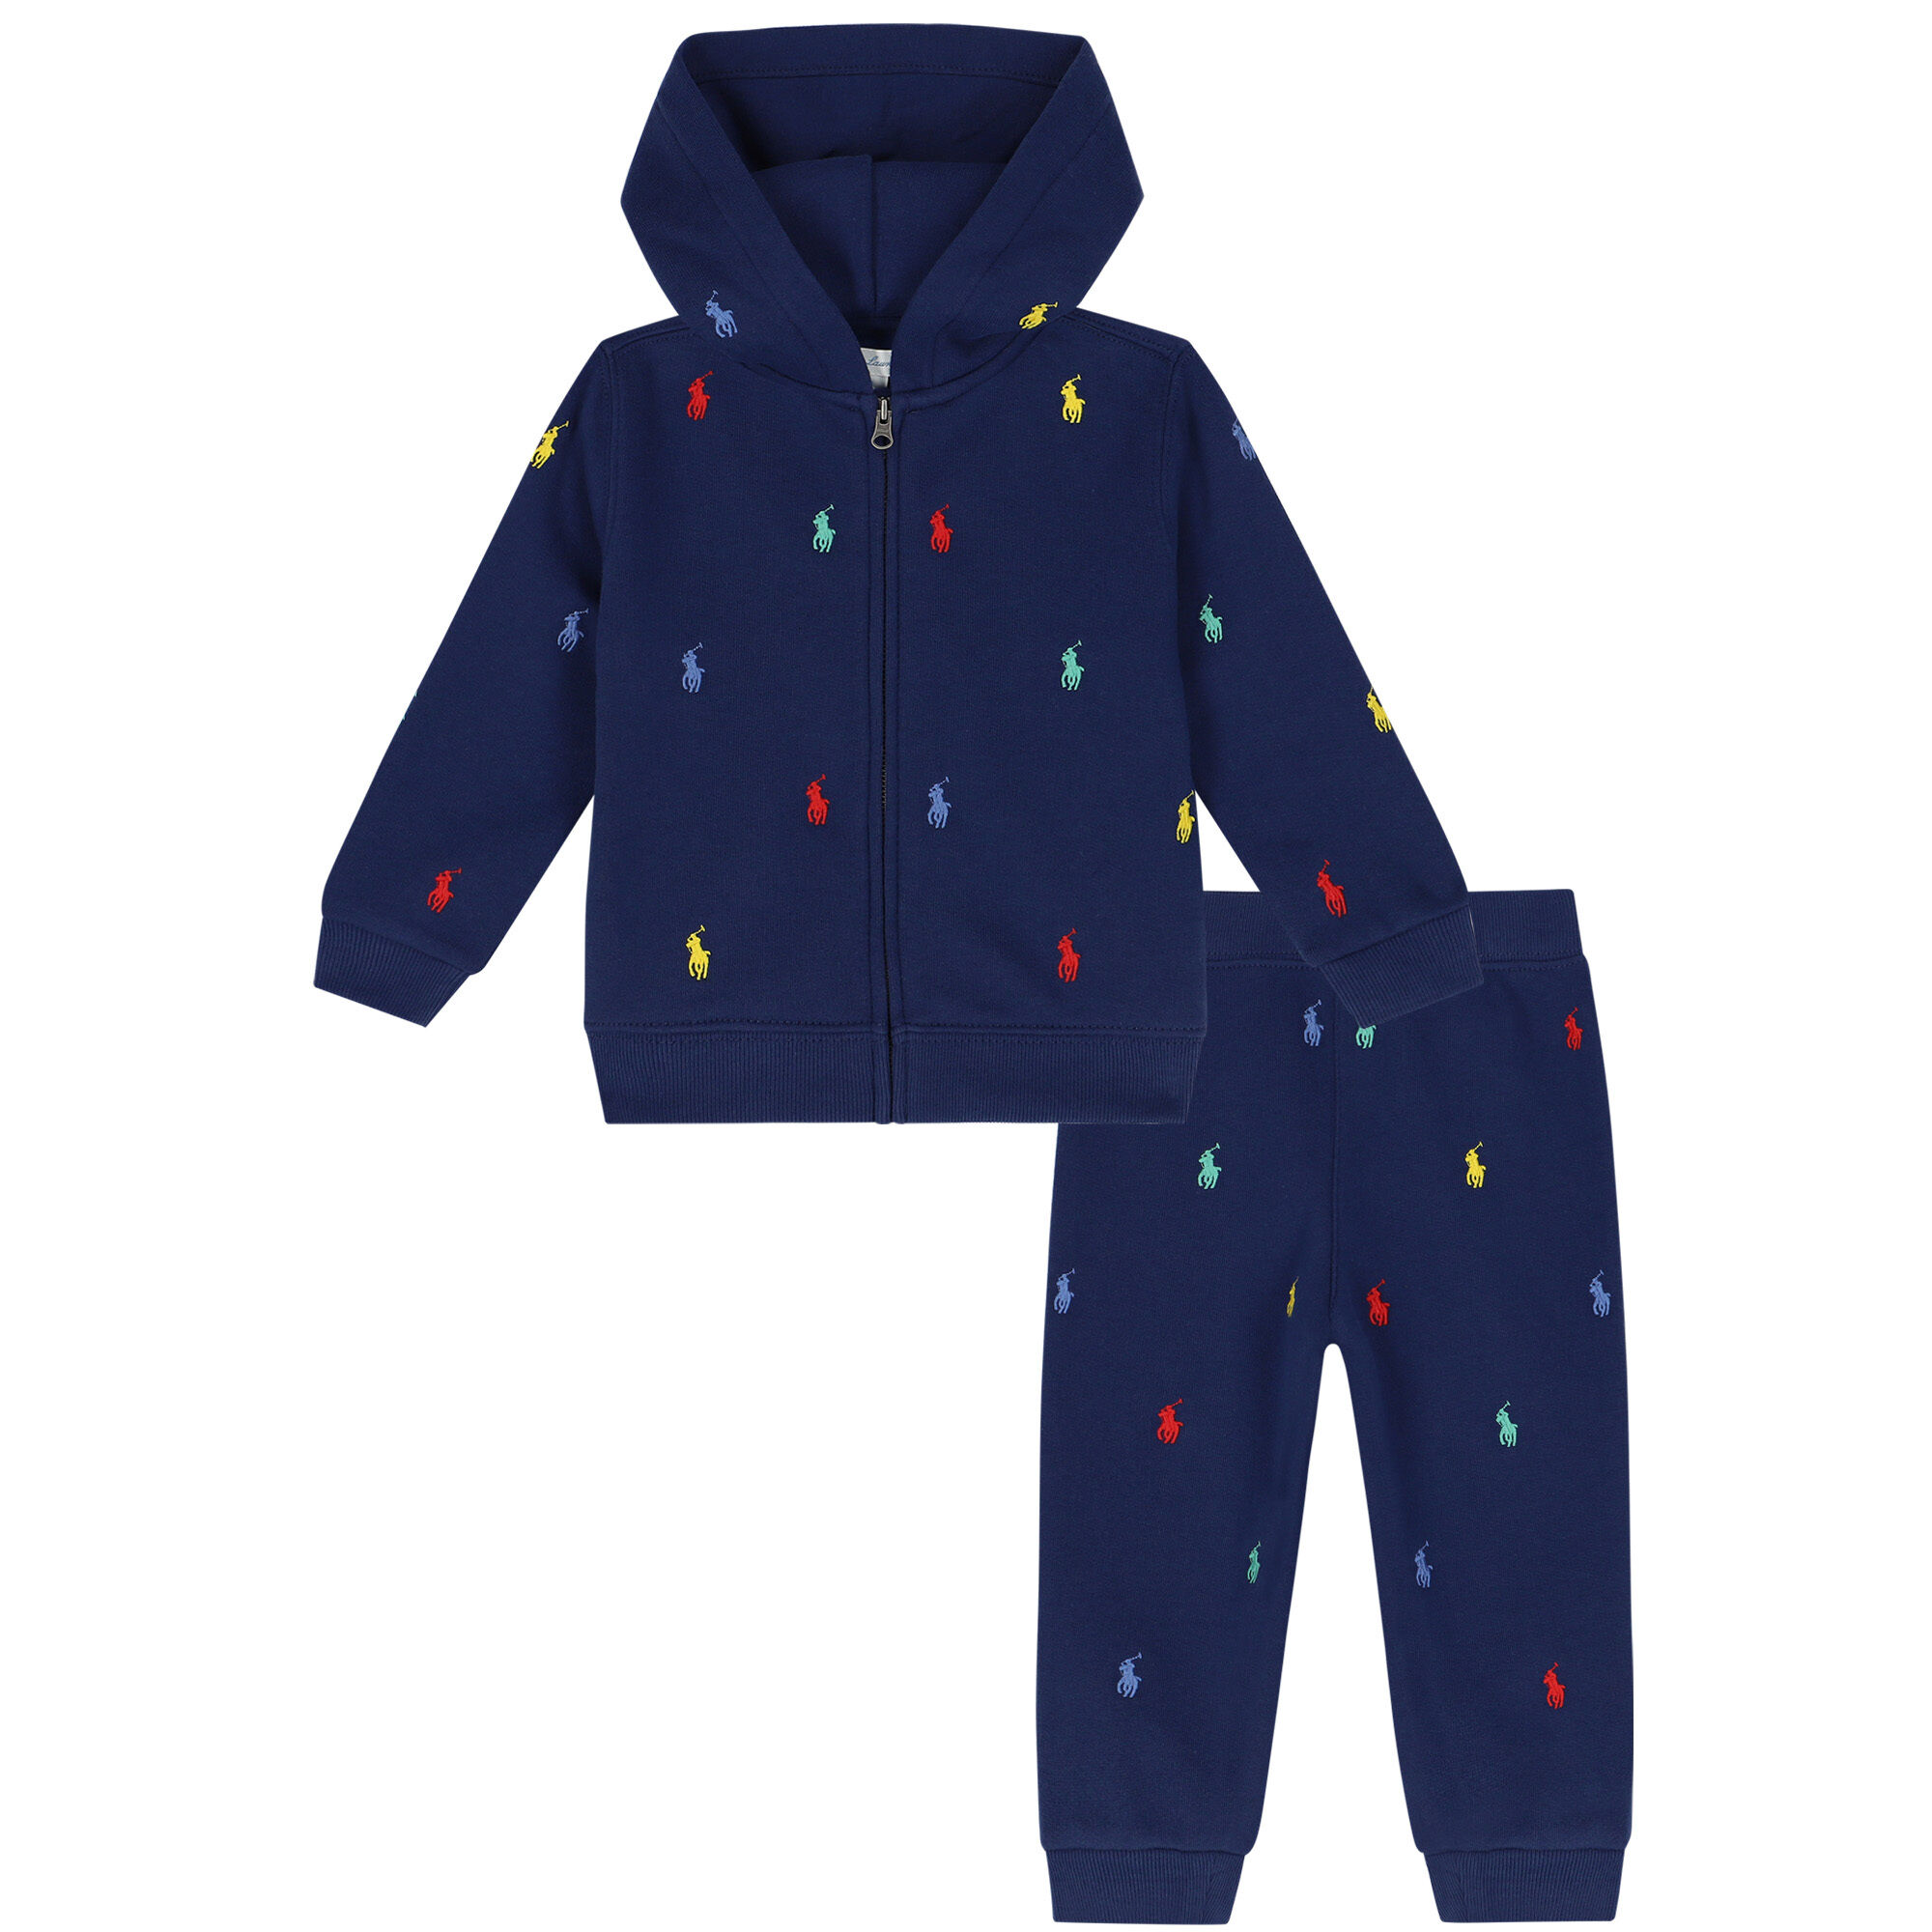 Baby Boy Polo Sweat Suit Sale Online | bellvalefarms.com